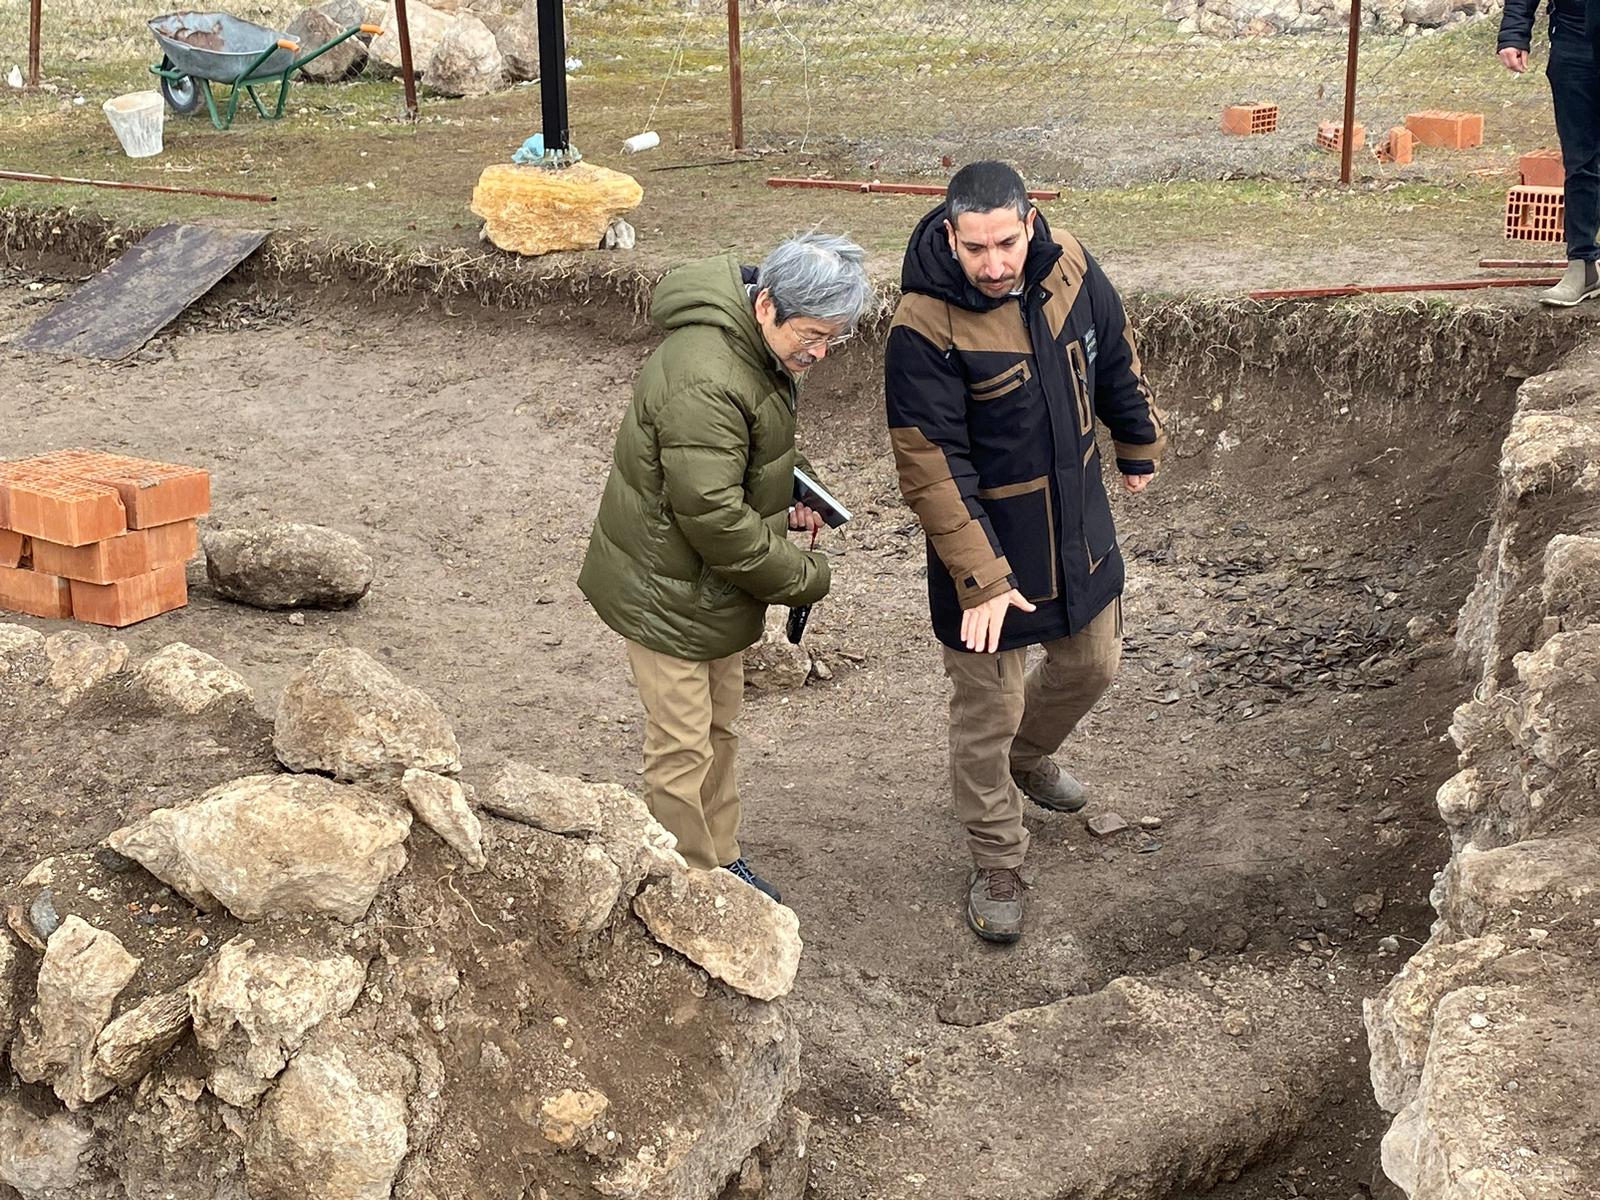 Japon bilim insanı Karabük’te antik kentteki kazı çalışmalarını inceledi